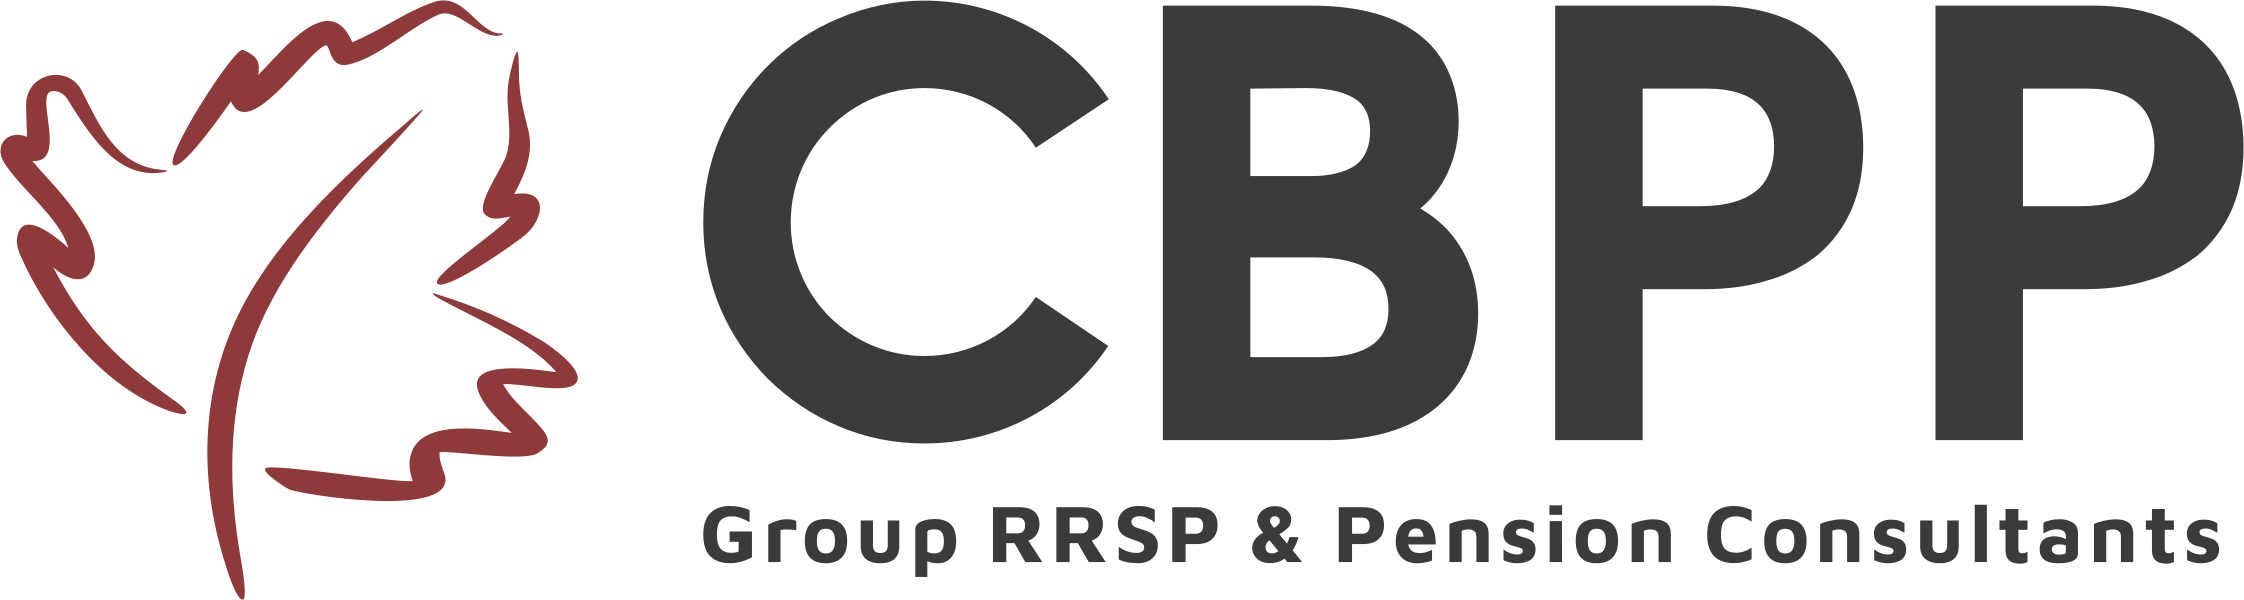 CBPP Logo Color Leaf Left